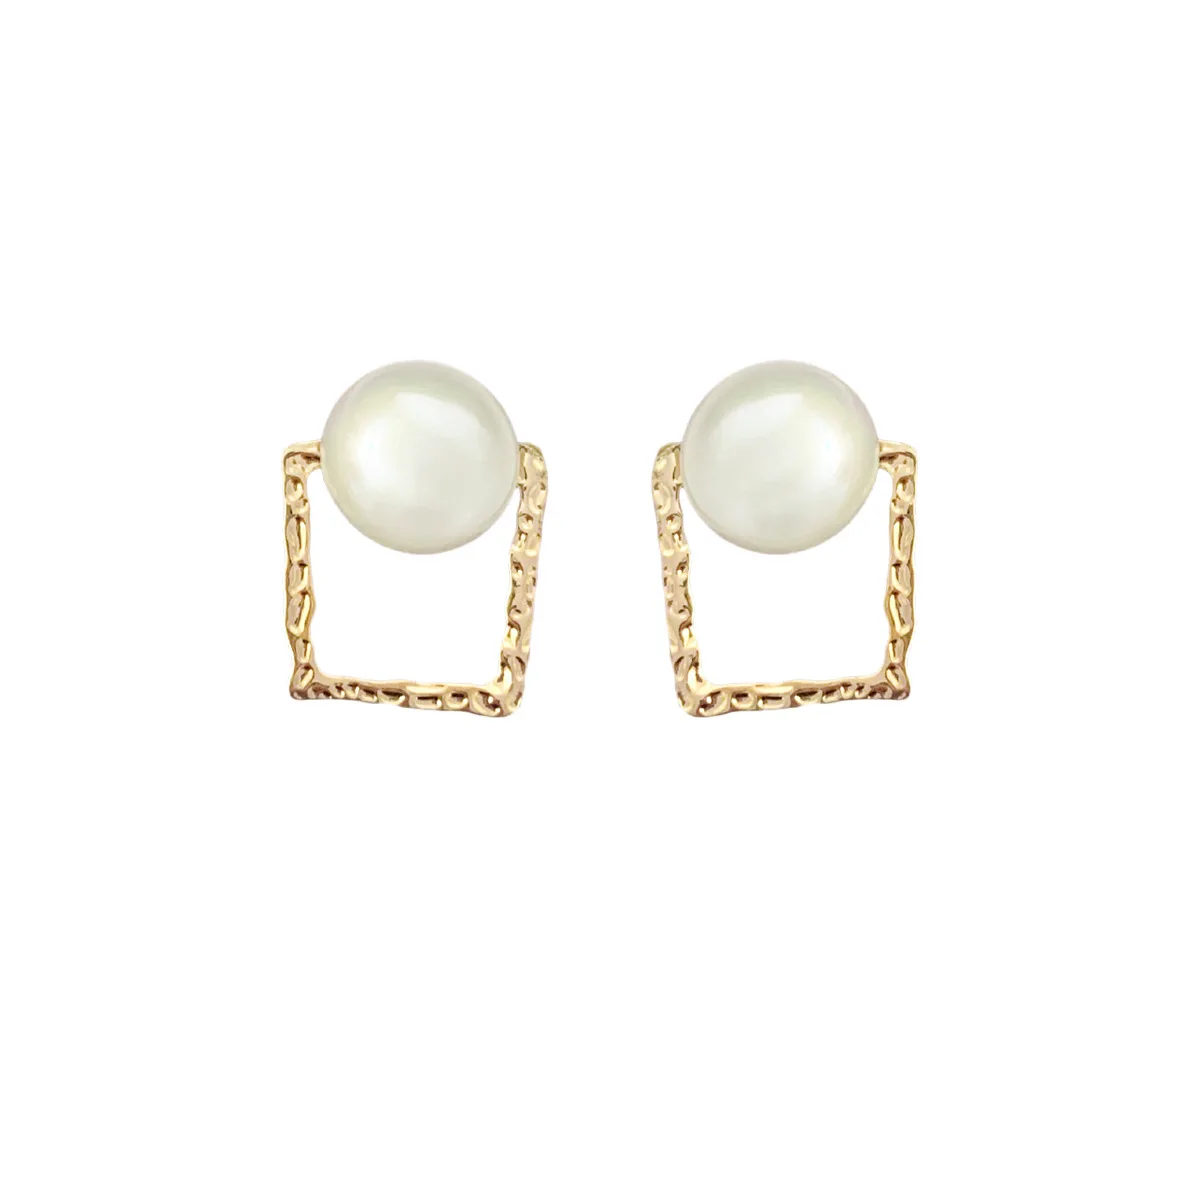 

2021 Hainon pearl earrings Birthstone June geometry romantic stud earring Fashion style women earring alloy elegant jewelry, Picture shows